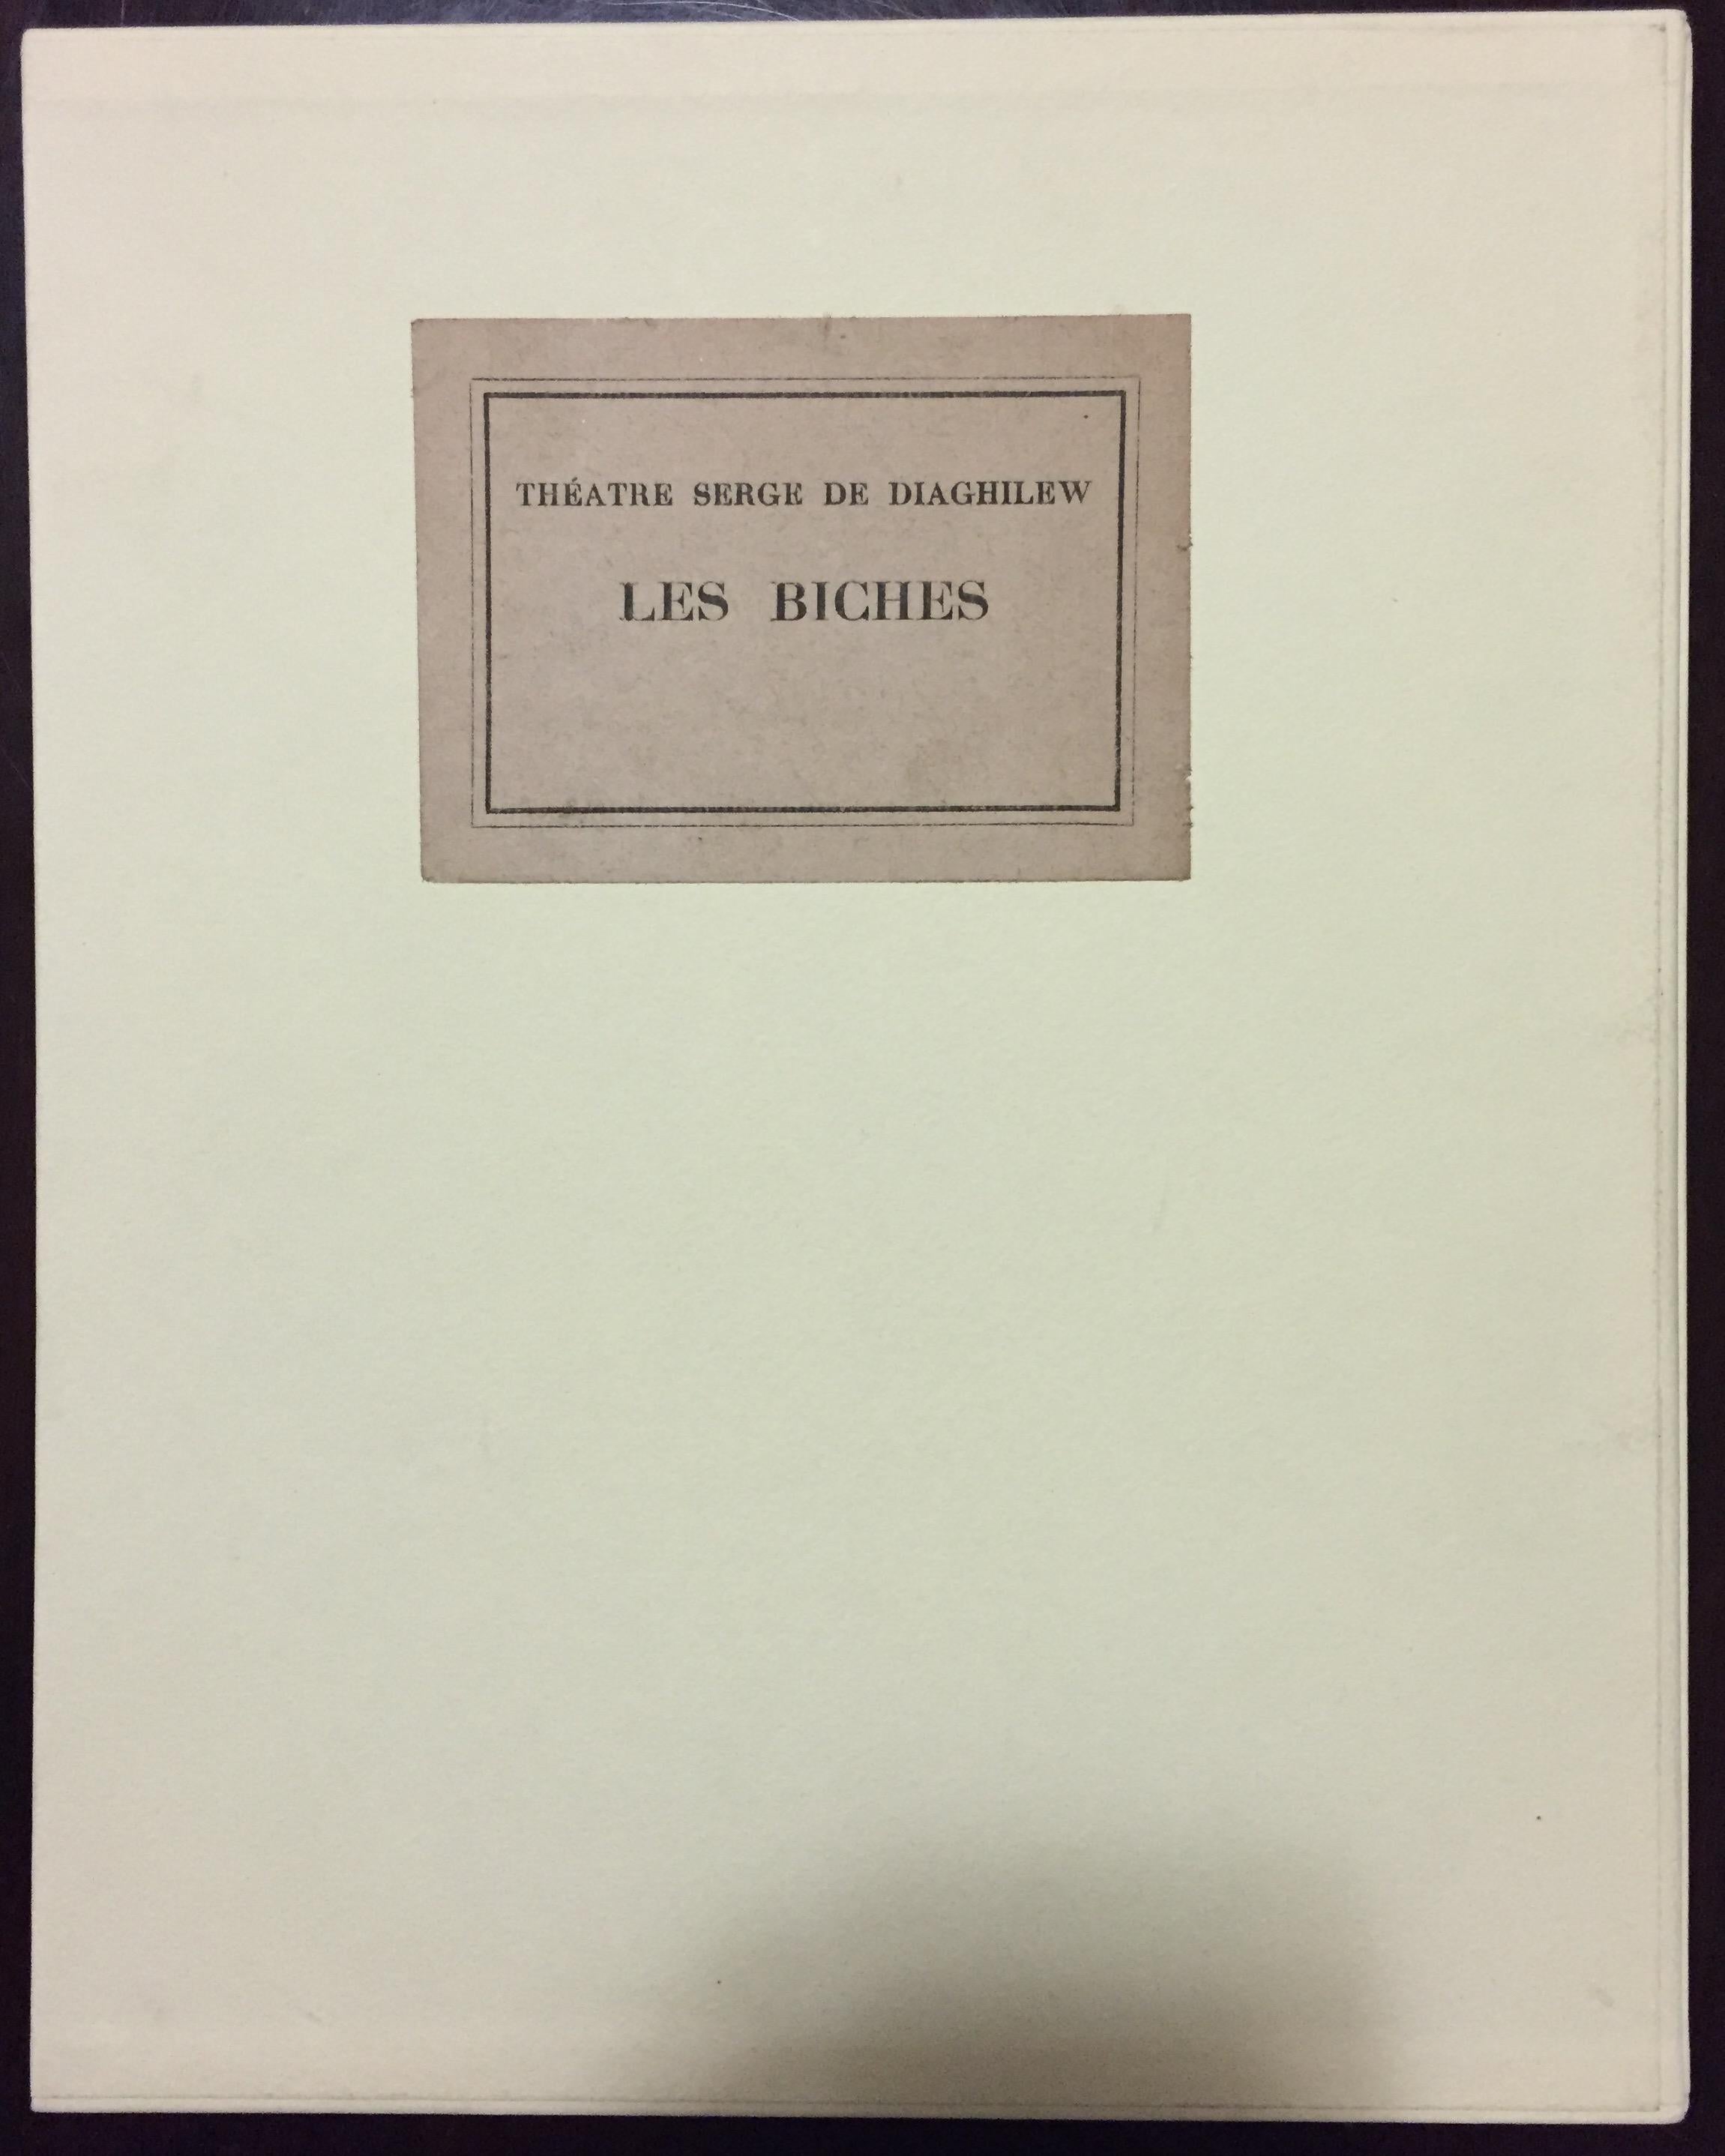 Les Biches – Seltenes Buch, illustriert von M. Laurencin – 1924 (Moderne), Print, von Marie Laurencin